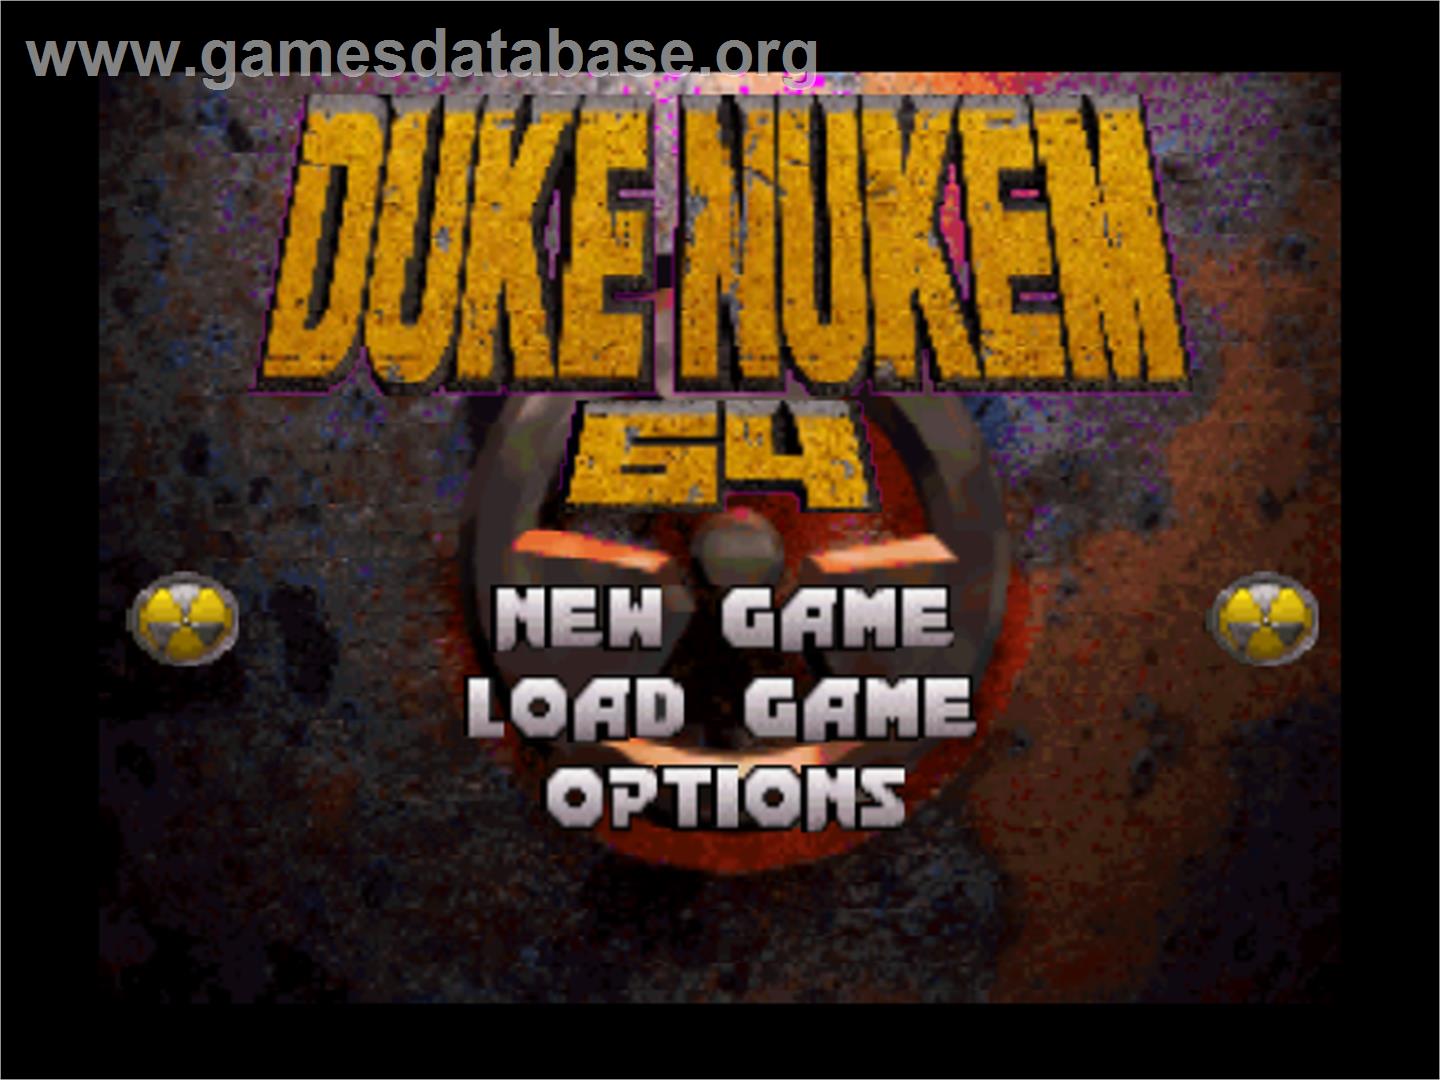 Duke Nukem 64 - Nintendo N64 - Artwork - Title Screen